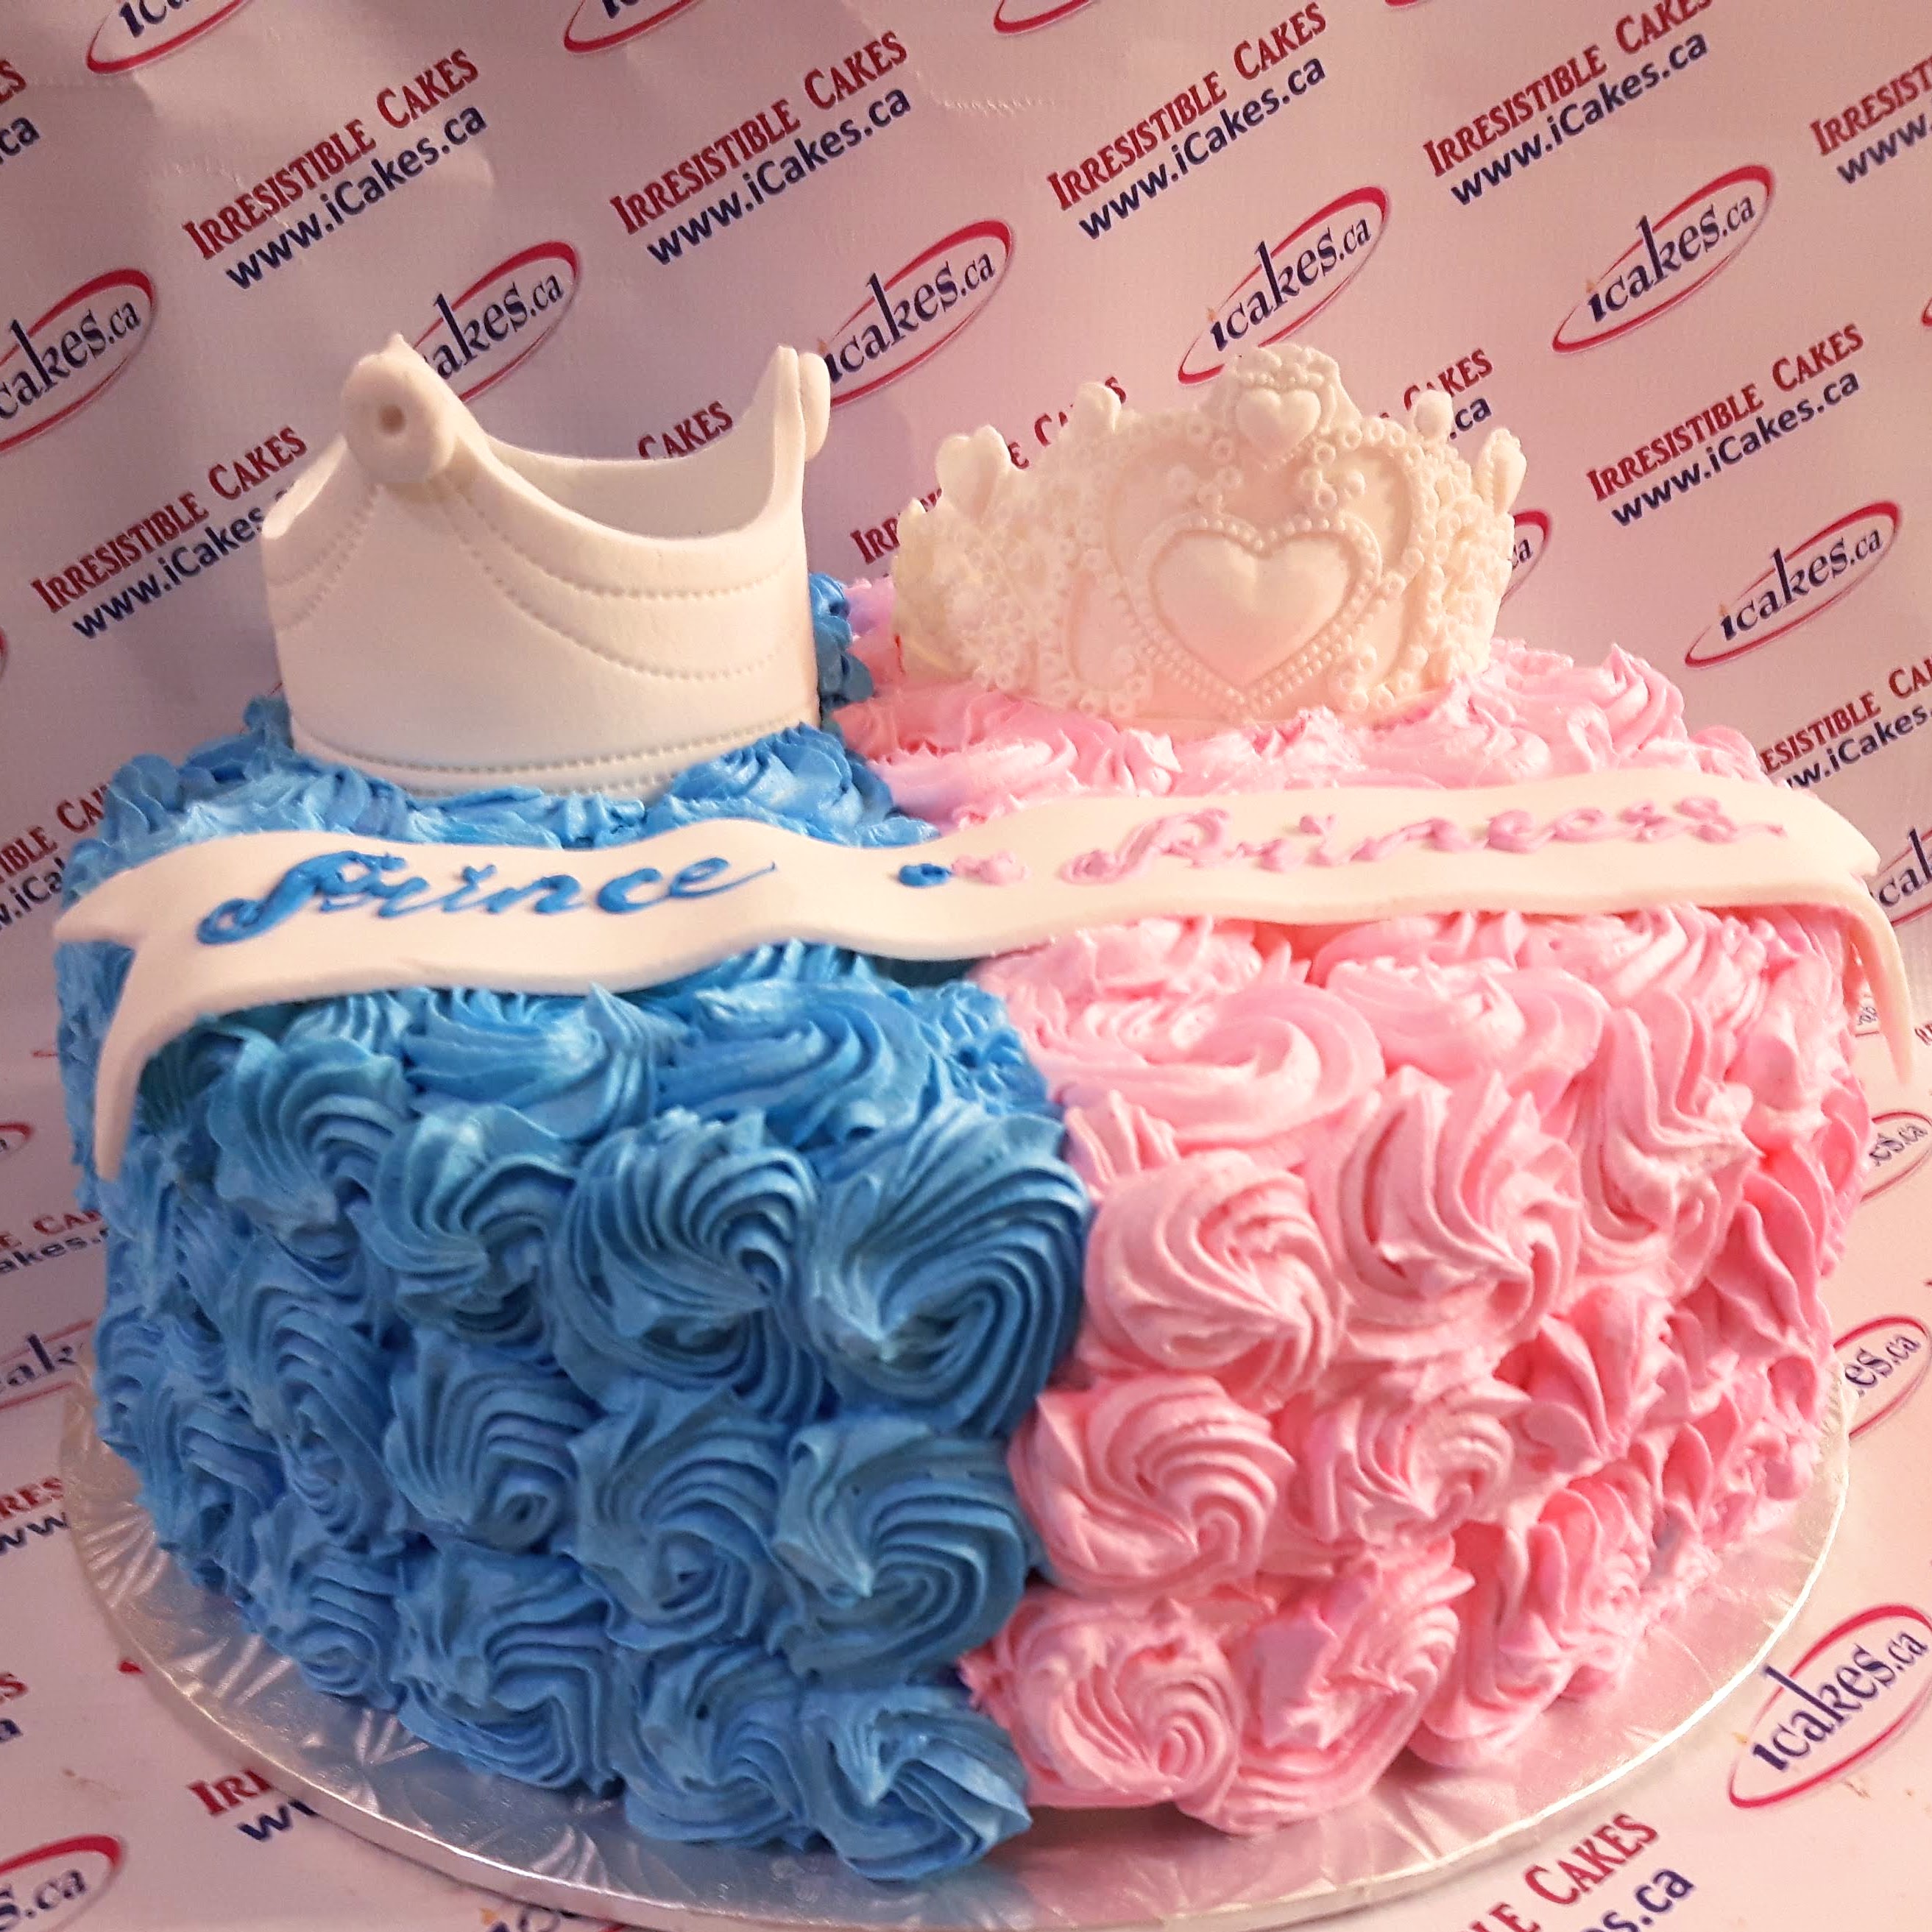 Gender Reveal tiara crown rosette buttercream baby shower cake